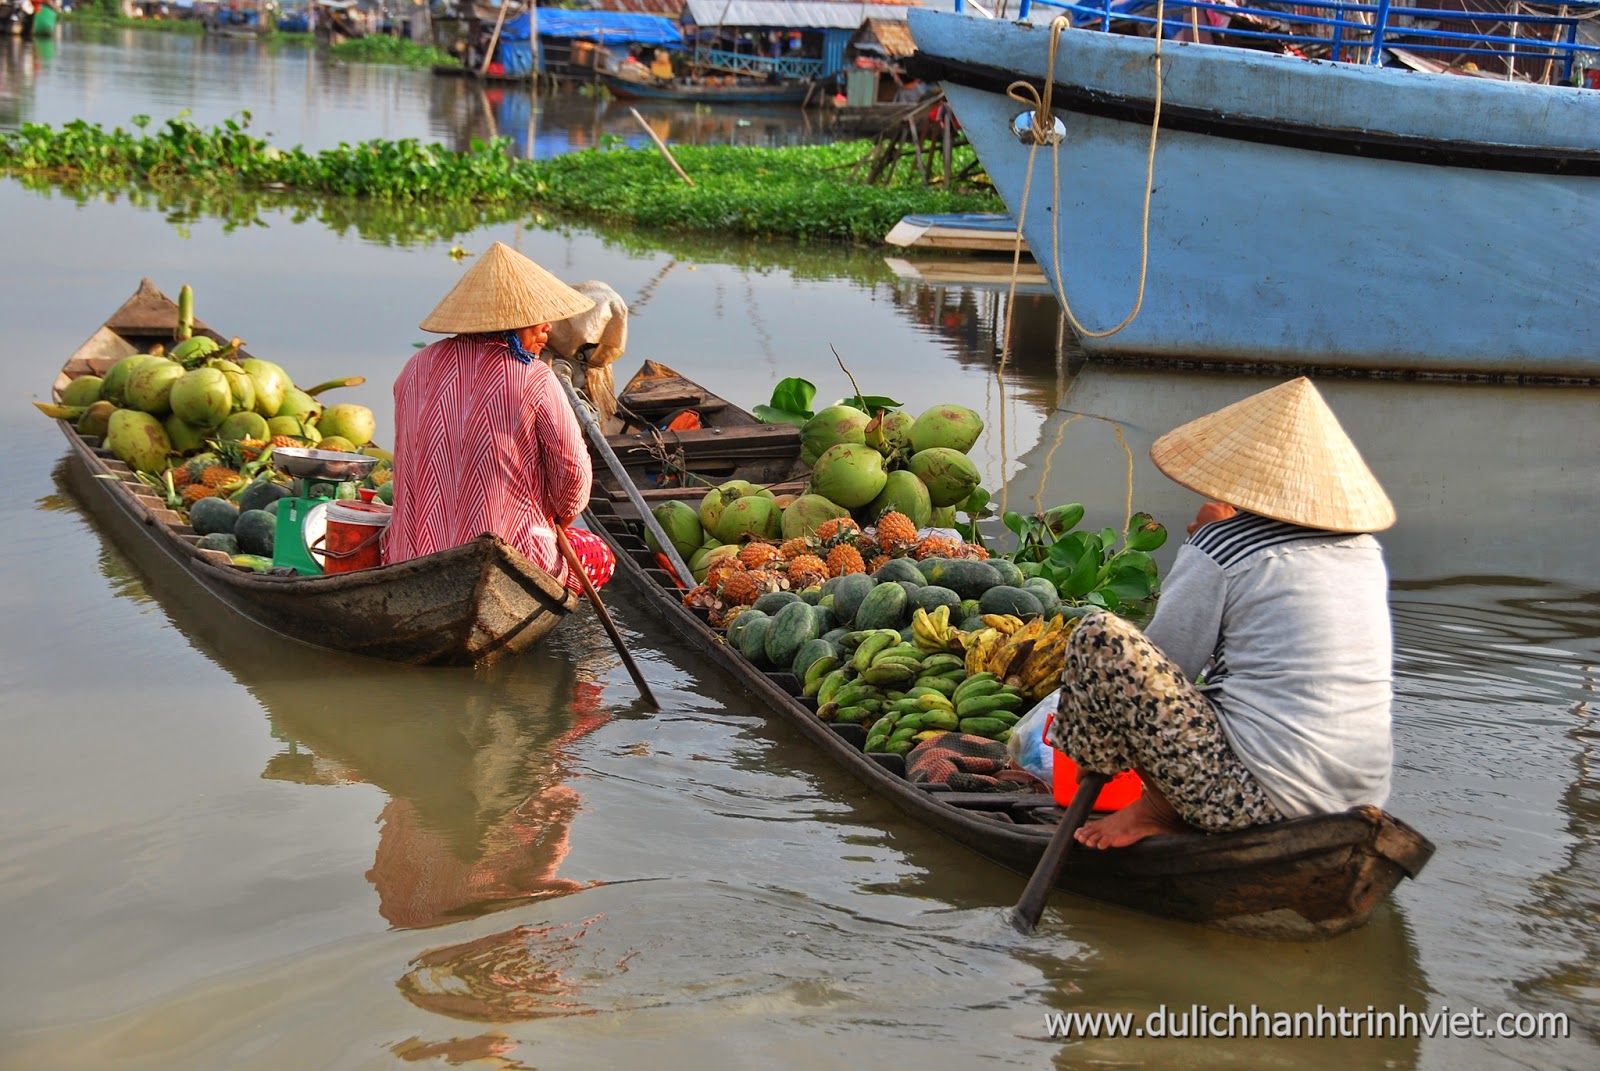 Du lịch chợ nổi Long Xuyên - Hành Trình Việt - Công Ty TNHH Du Lịch Vận Chuyển Hành Trình Việt